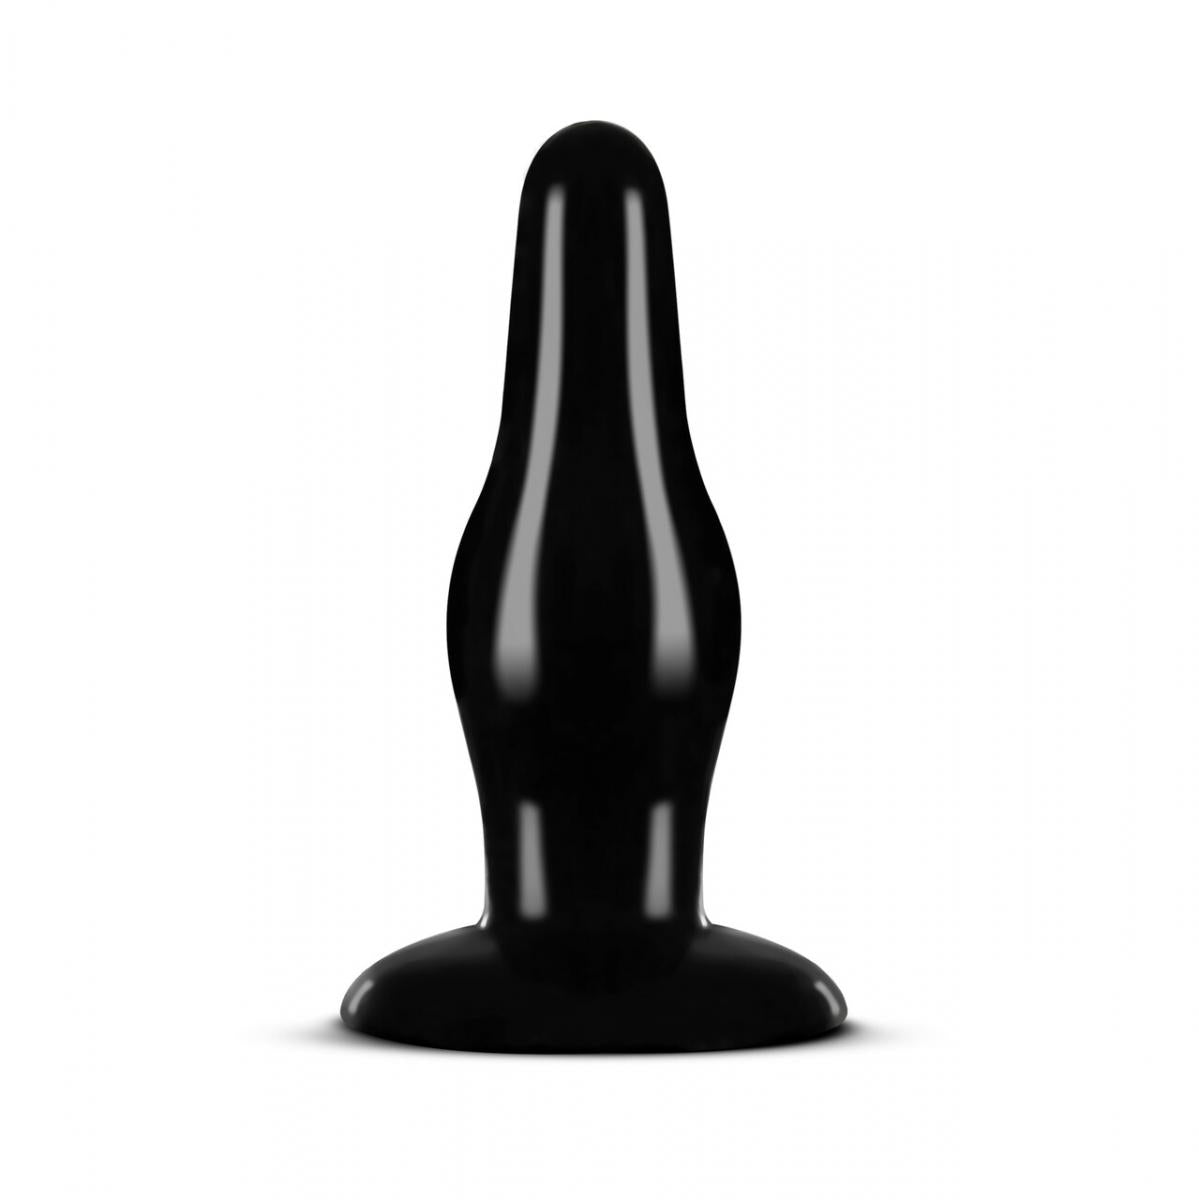 Zwarte, medium buttplug gemaakt van siliconen. Ontworpen door Anal Adventures voor gay mannen en te koop bij Flavourez.